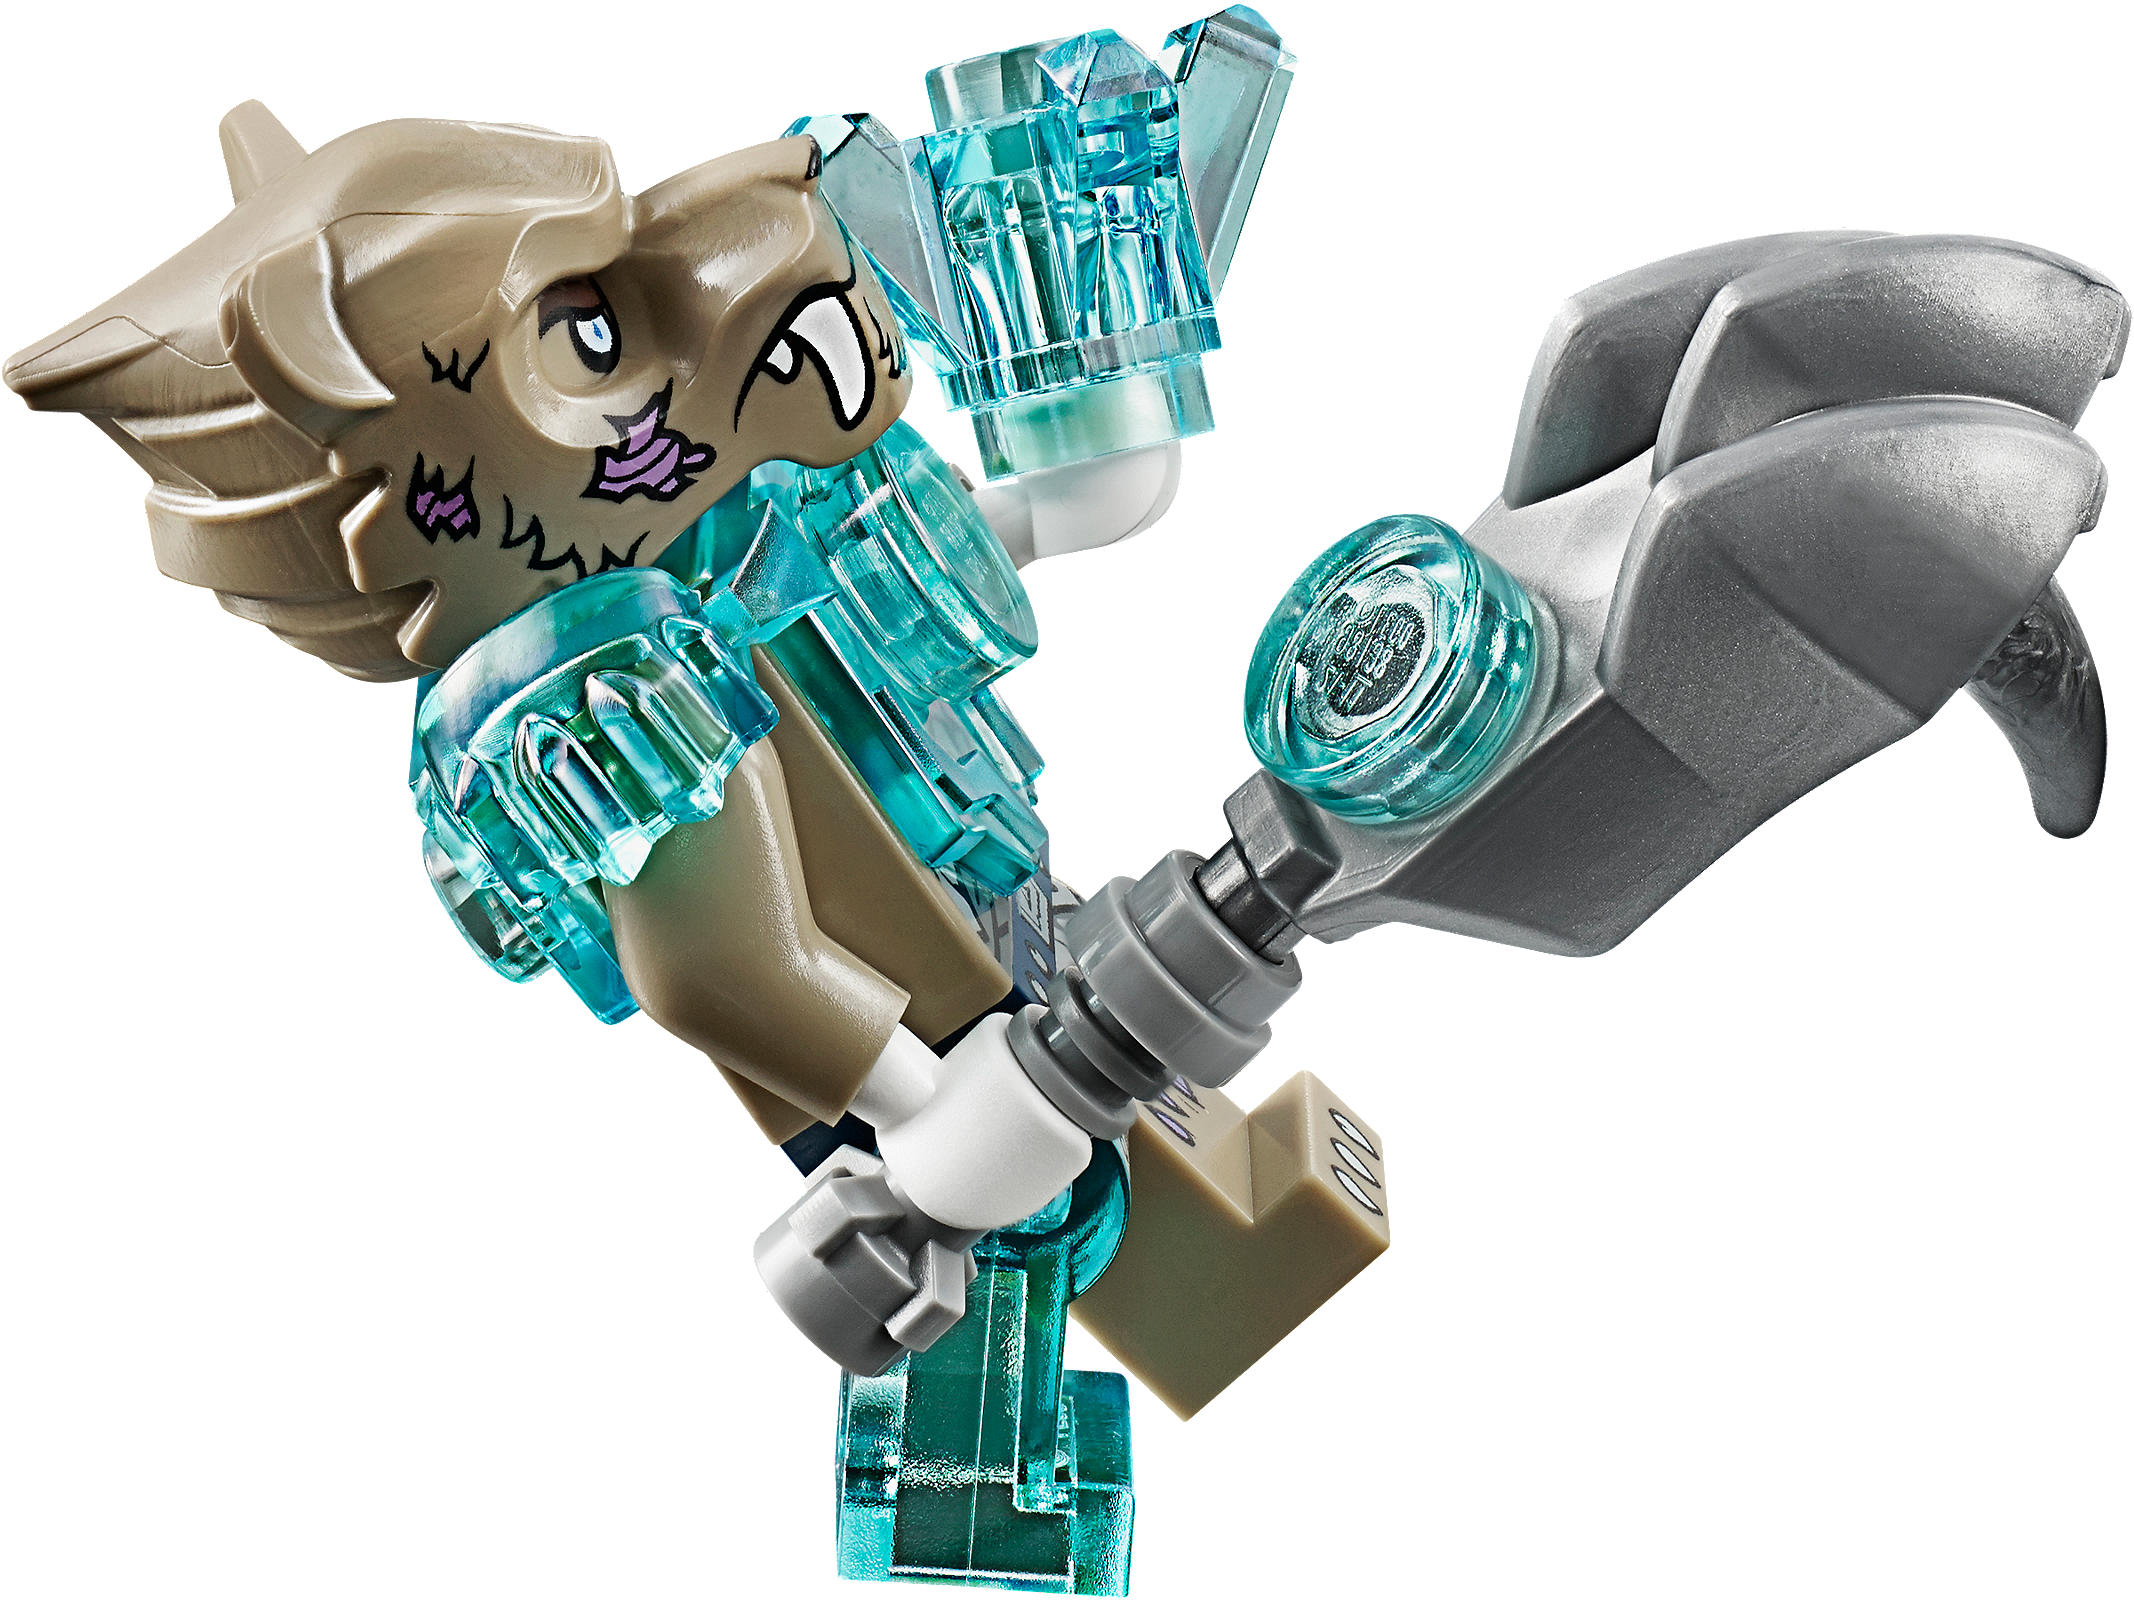 Lego 70142 Legends of Chima Огненный истребитель Орлицы Эрис.